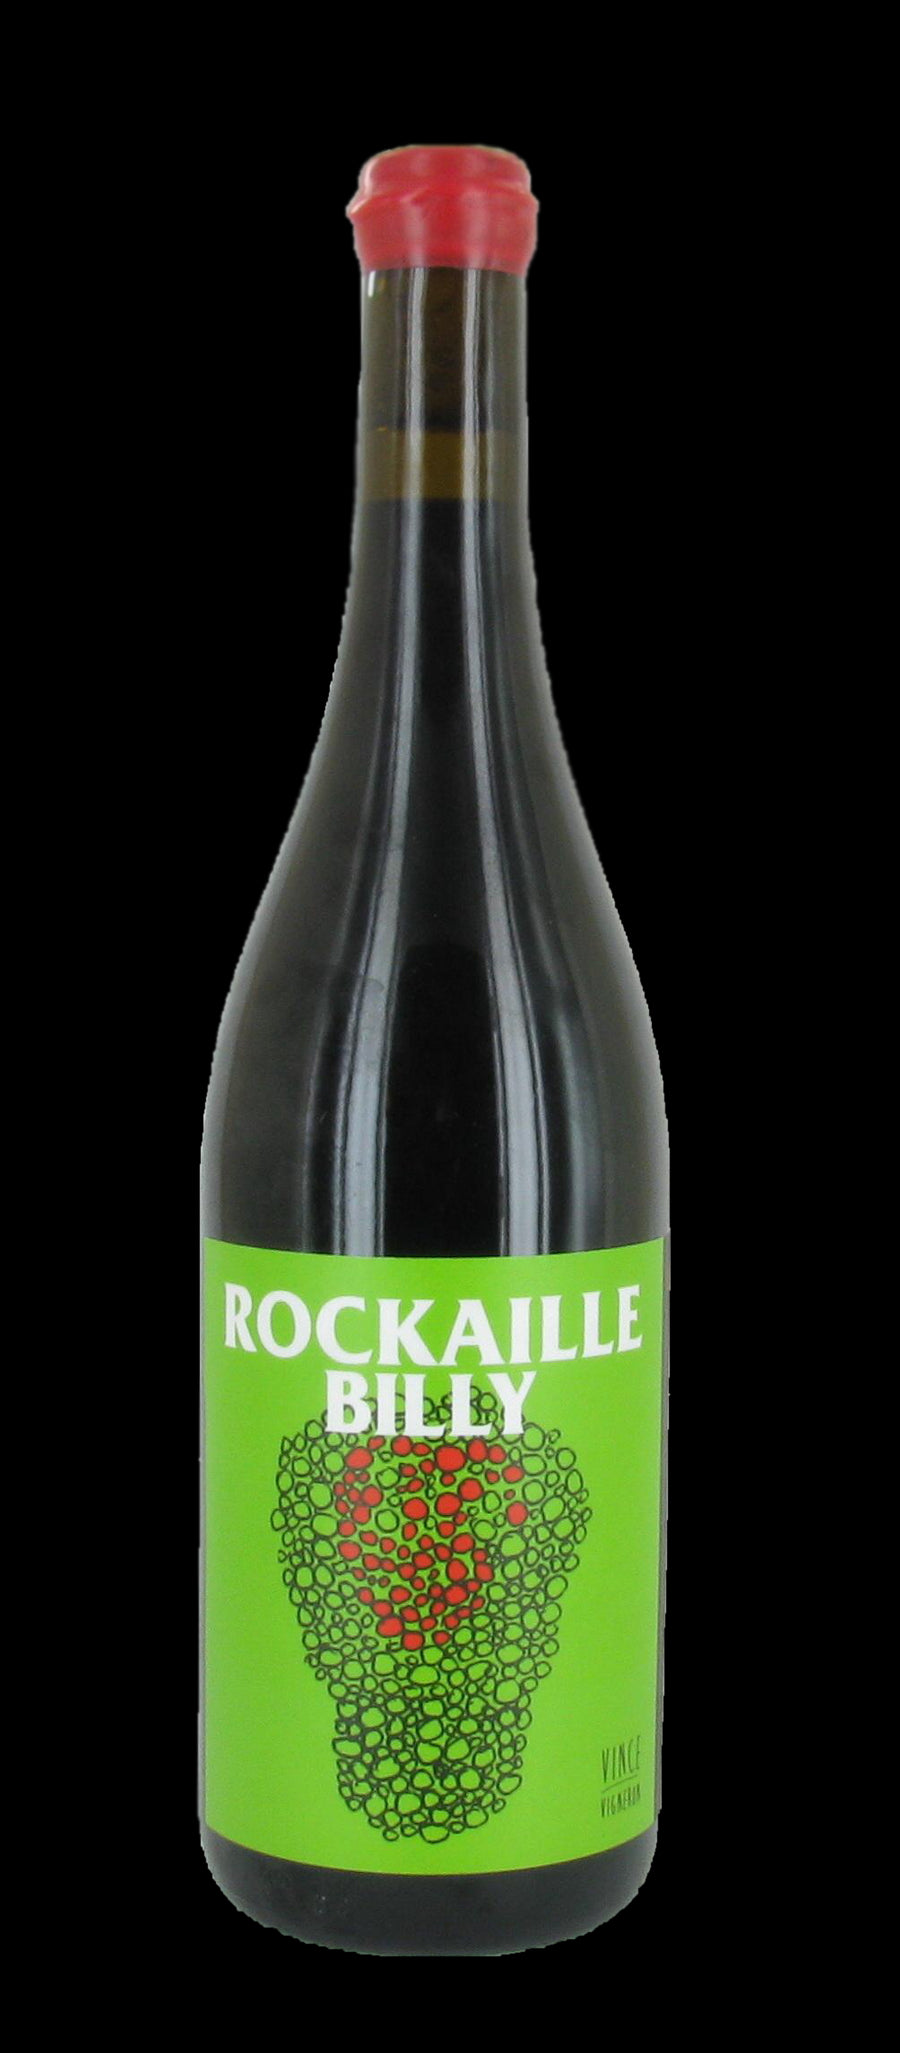 Rockaille Billy 2018